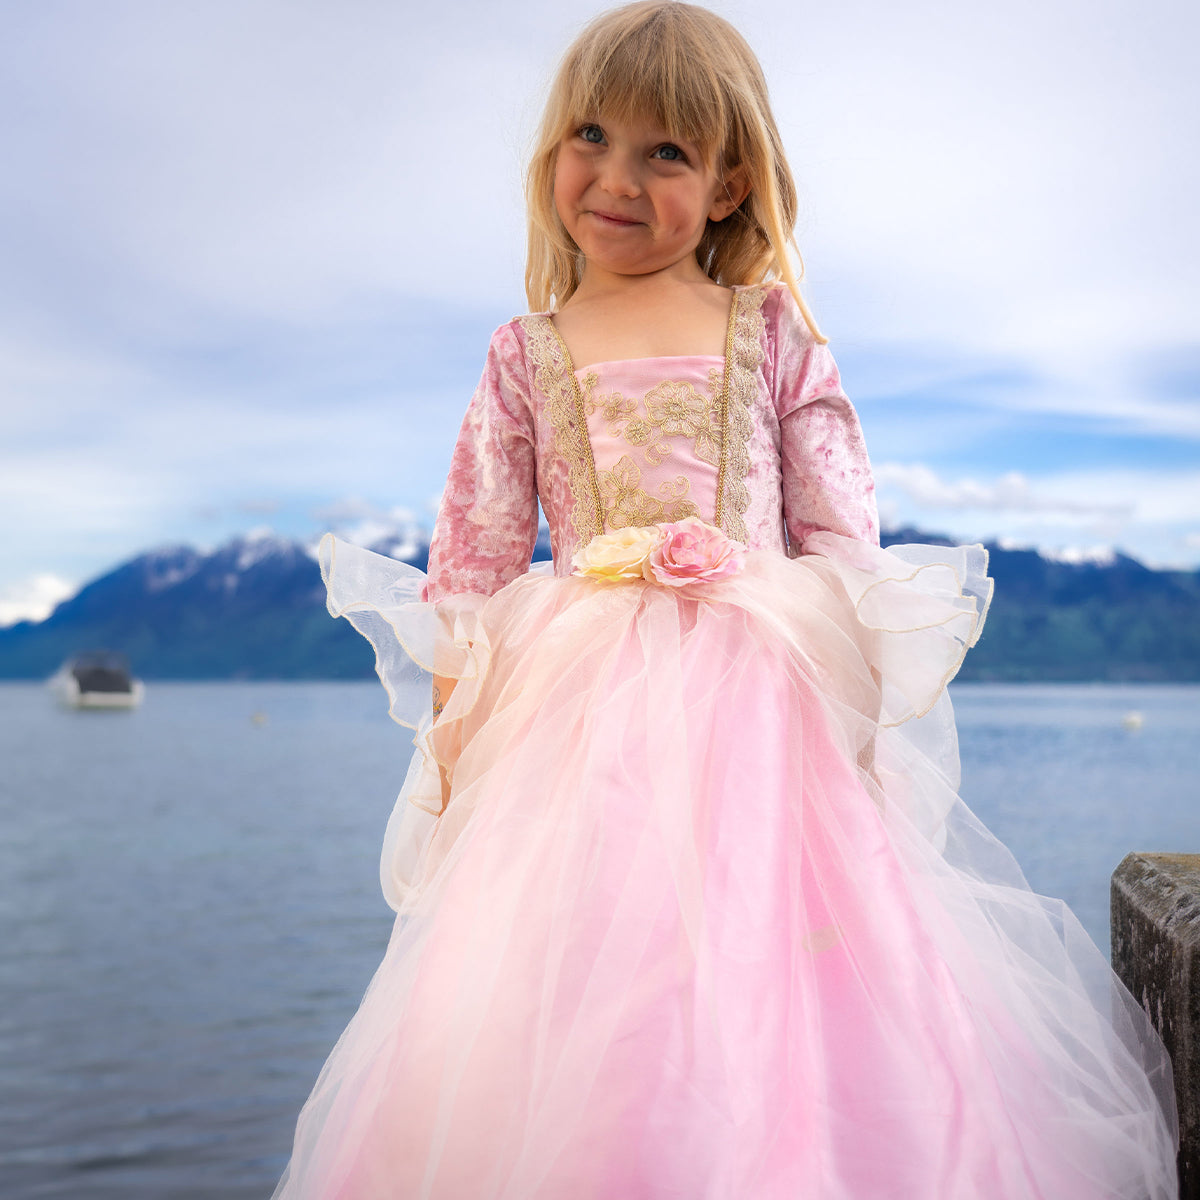 Betreed het koninklijke rijk boordevol fantasie met deze prachtige pink rose prinsessenjurk van het merk Great Pretenders. Met deze jurk aan voelt echt meisje zich een prachtige prinses! Deze mooie jurk heeft een roze kleur en glanst en glittert wanneer je er in ronddraait. VanZus